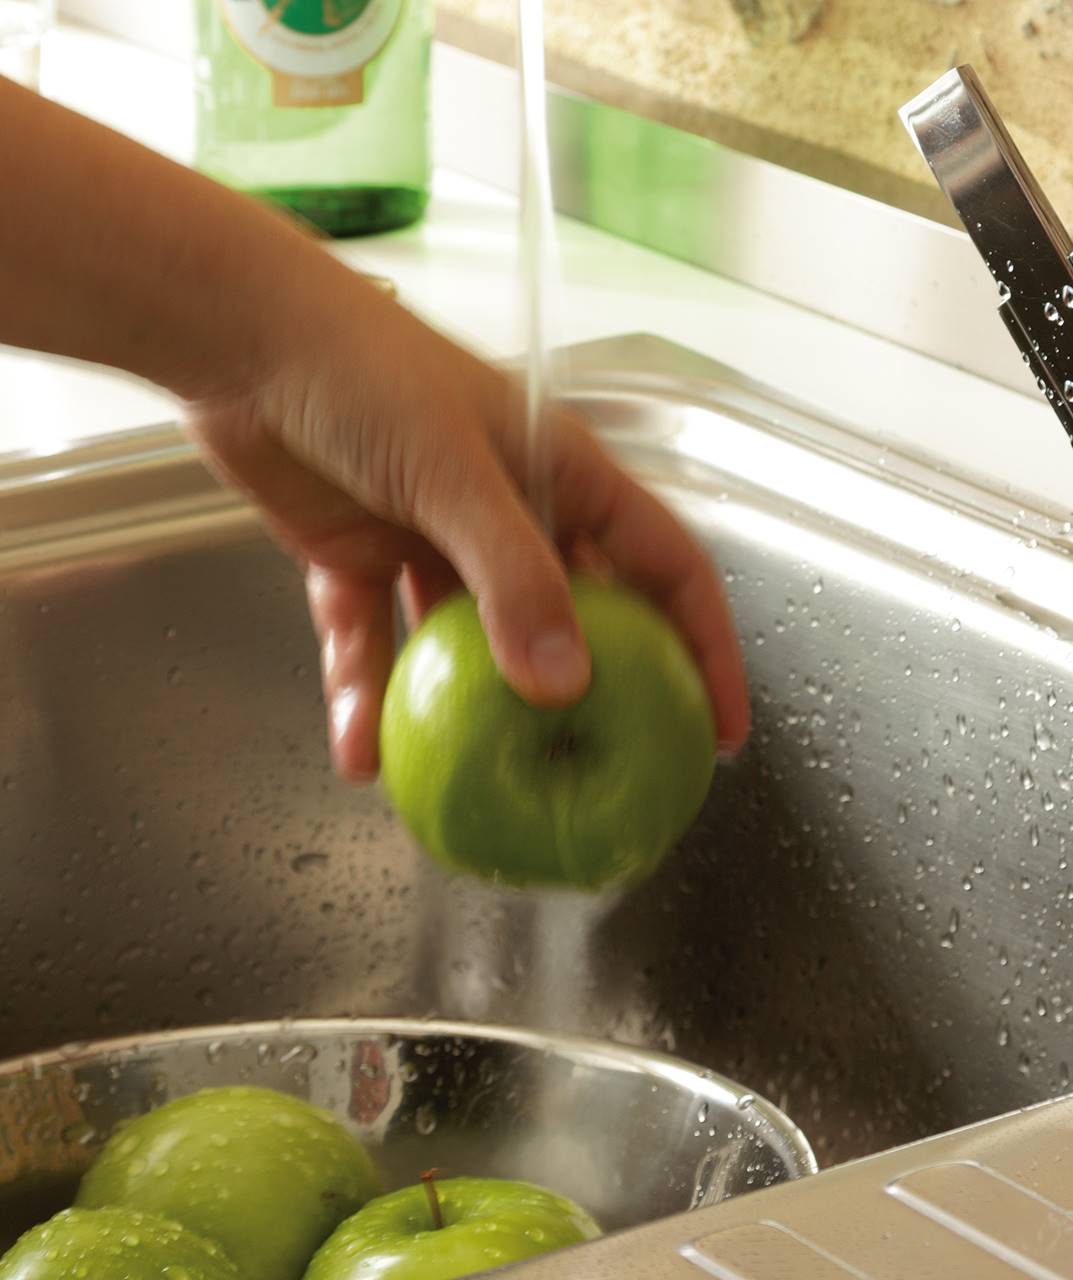 Detalle de mano lavando manzanas bajo chorro grifo